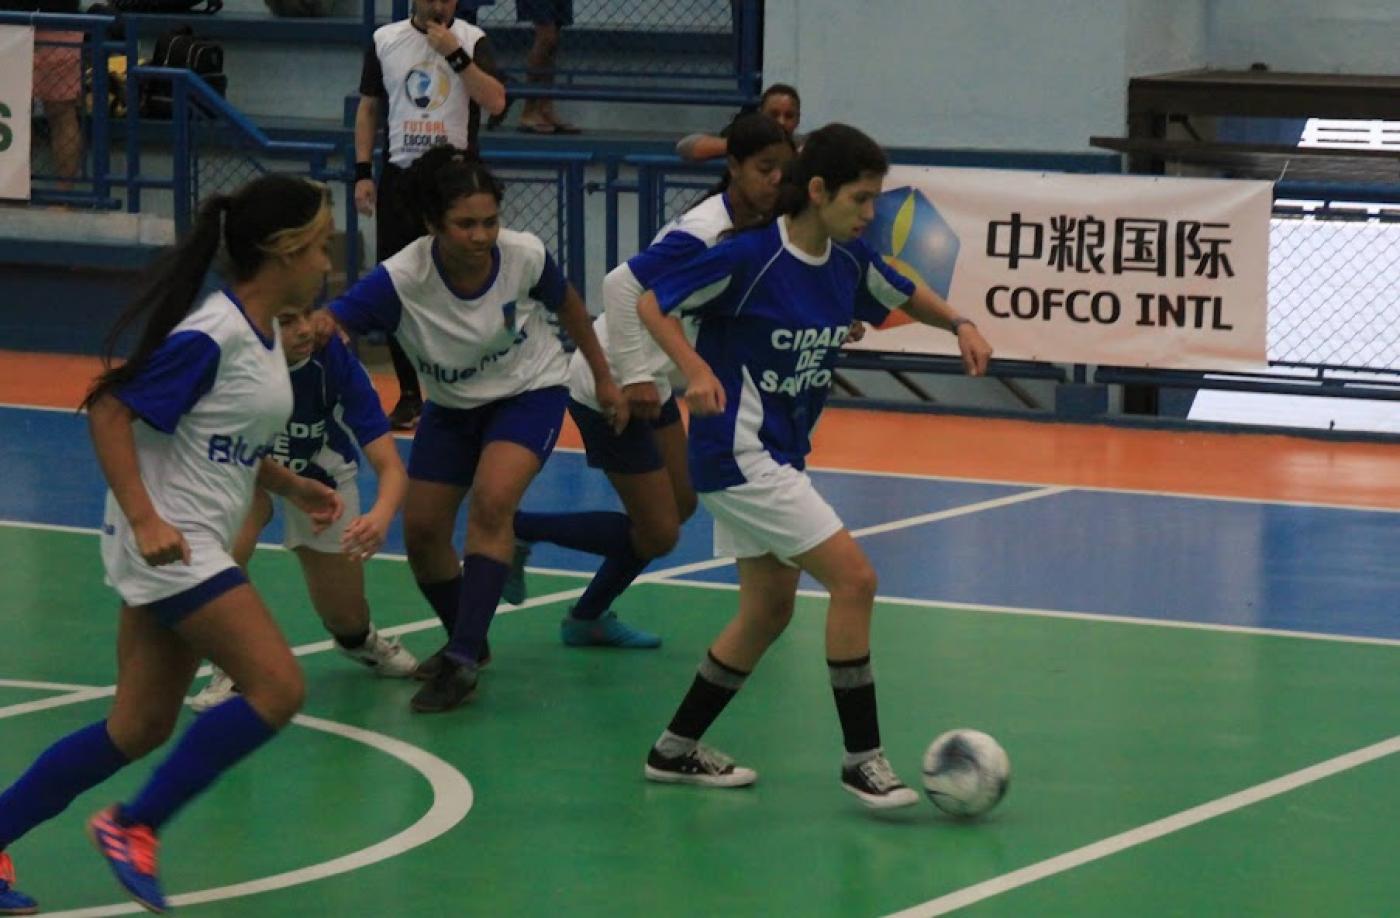 Meninas de uniformes branco e azul jogam futsal em quadra do Colégio Santista. #pratodosverem